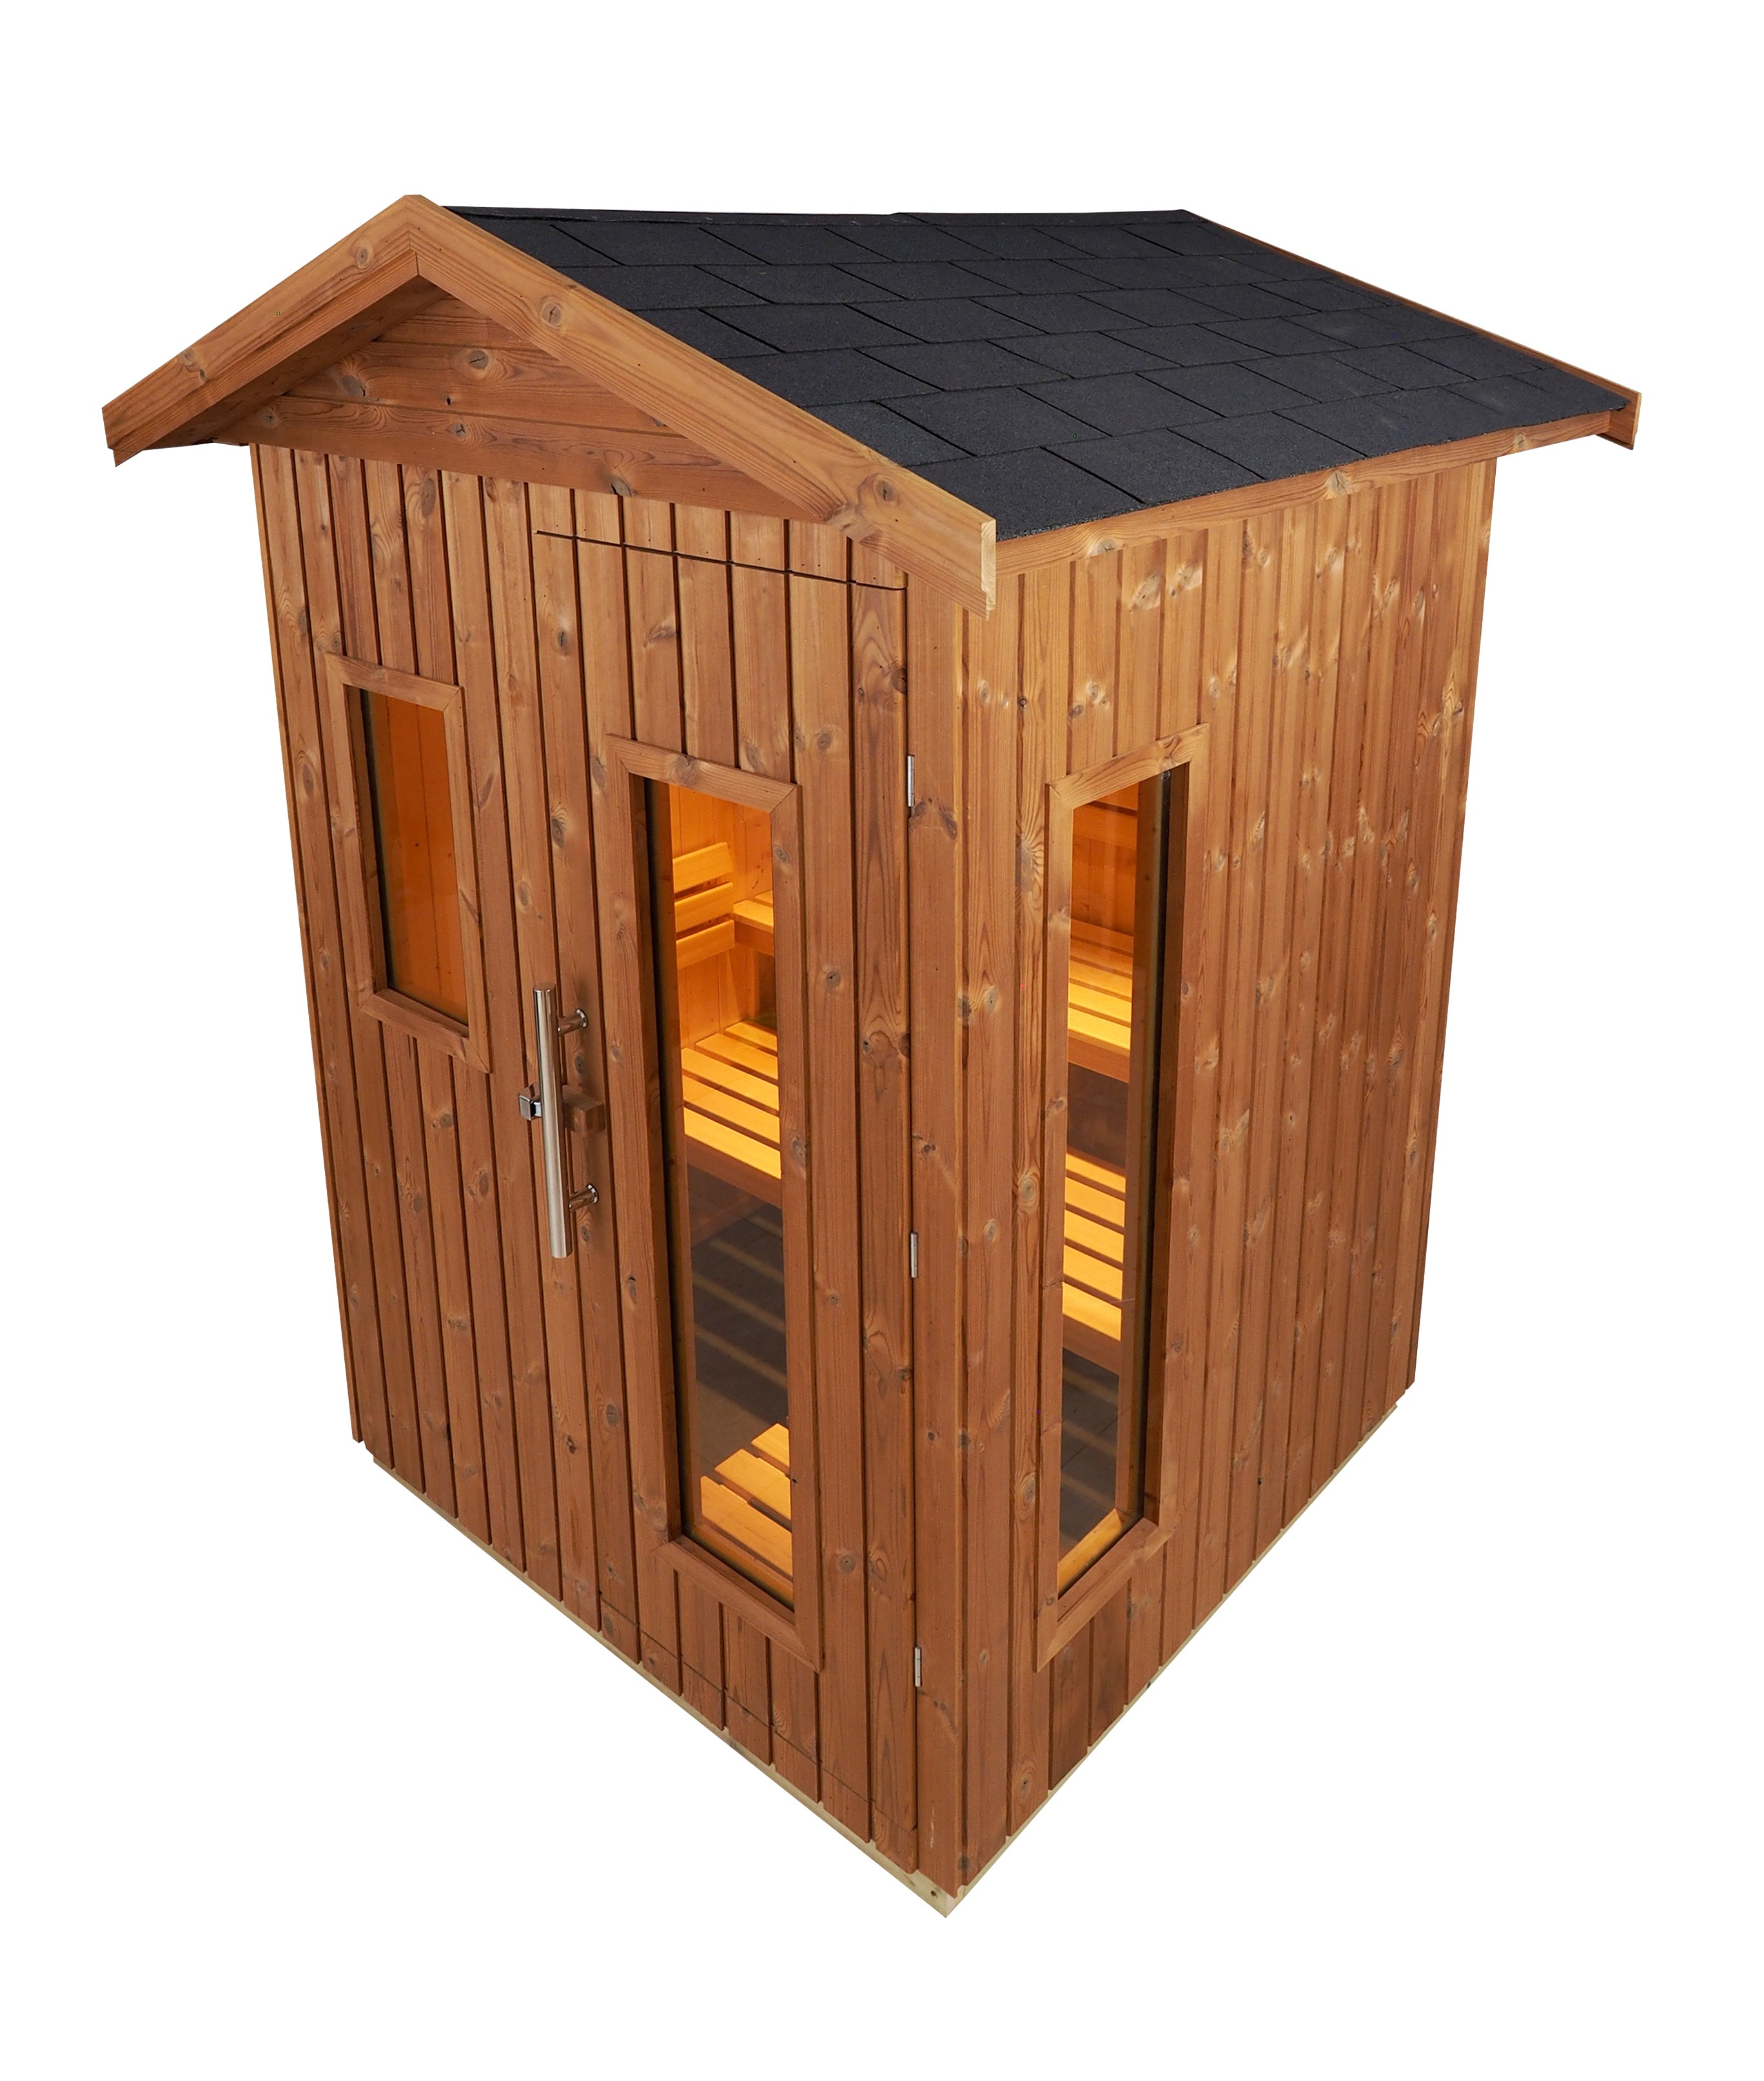 Cabina sauna Oceanic, tradizionale finlandese da esterno, E2030 per 5 persone